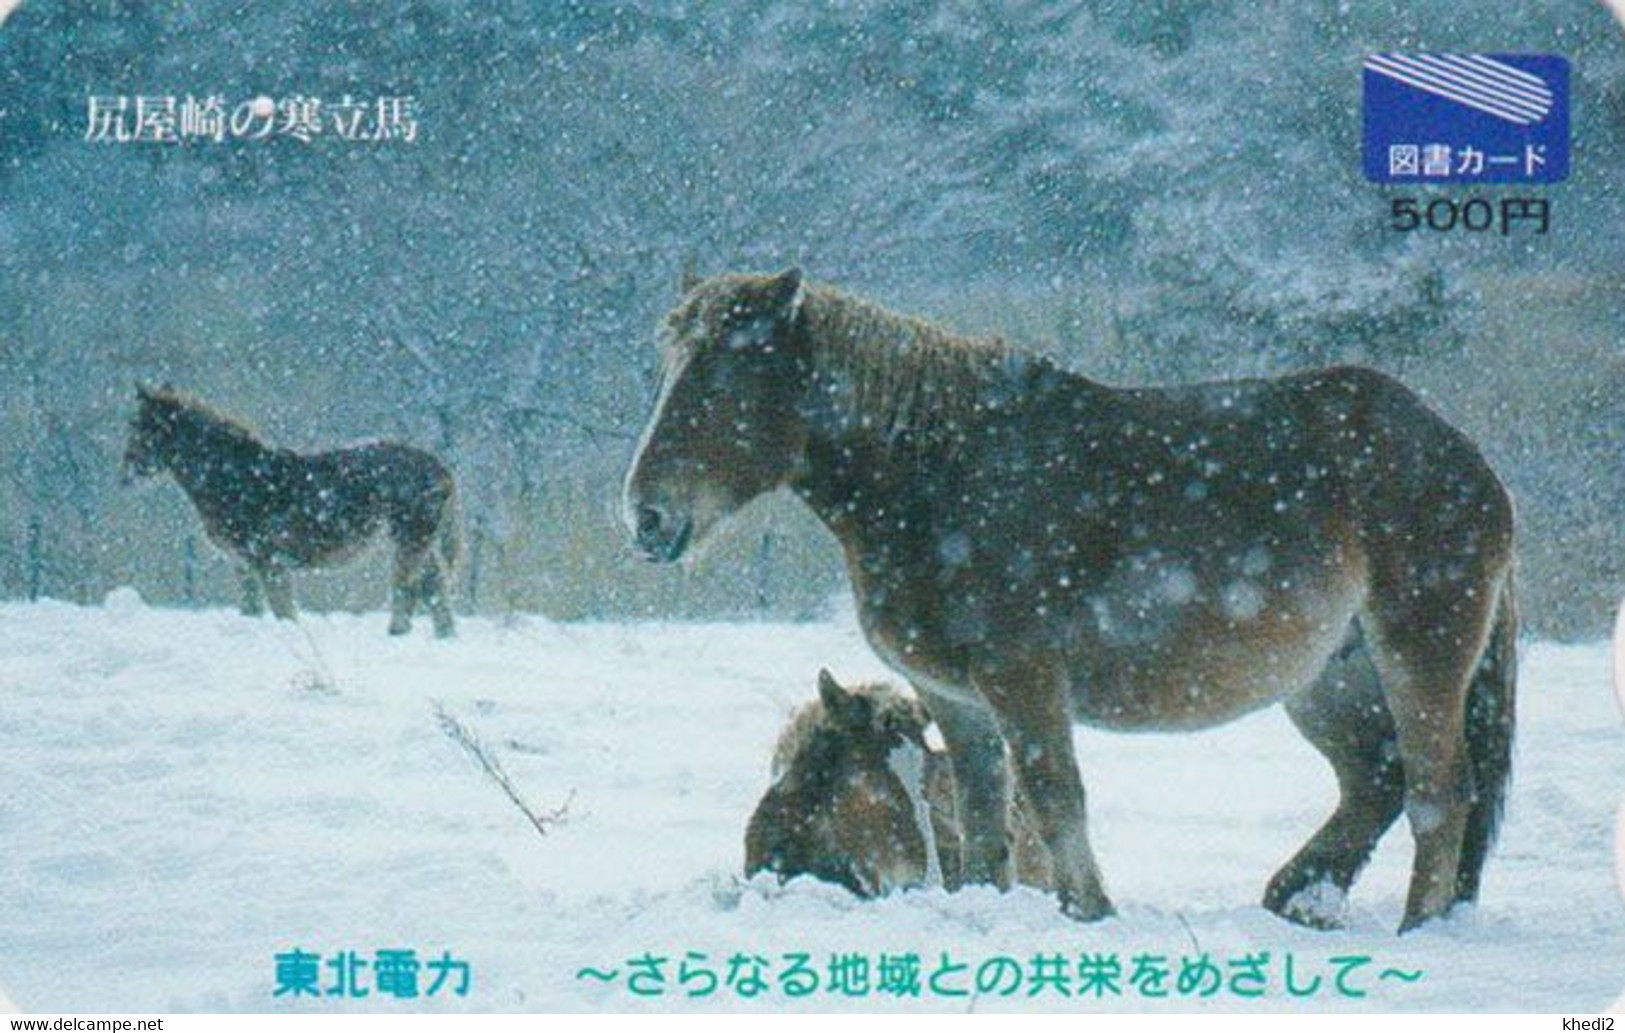 Carte Prépayée JAPON - ANIMAL - CHEVAL Dans La Neige A - HORSE In Snow JAPAN Prepaid Tosho Card  - 443 - Cavalli